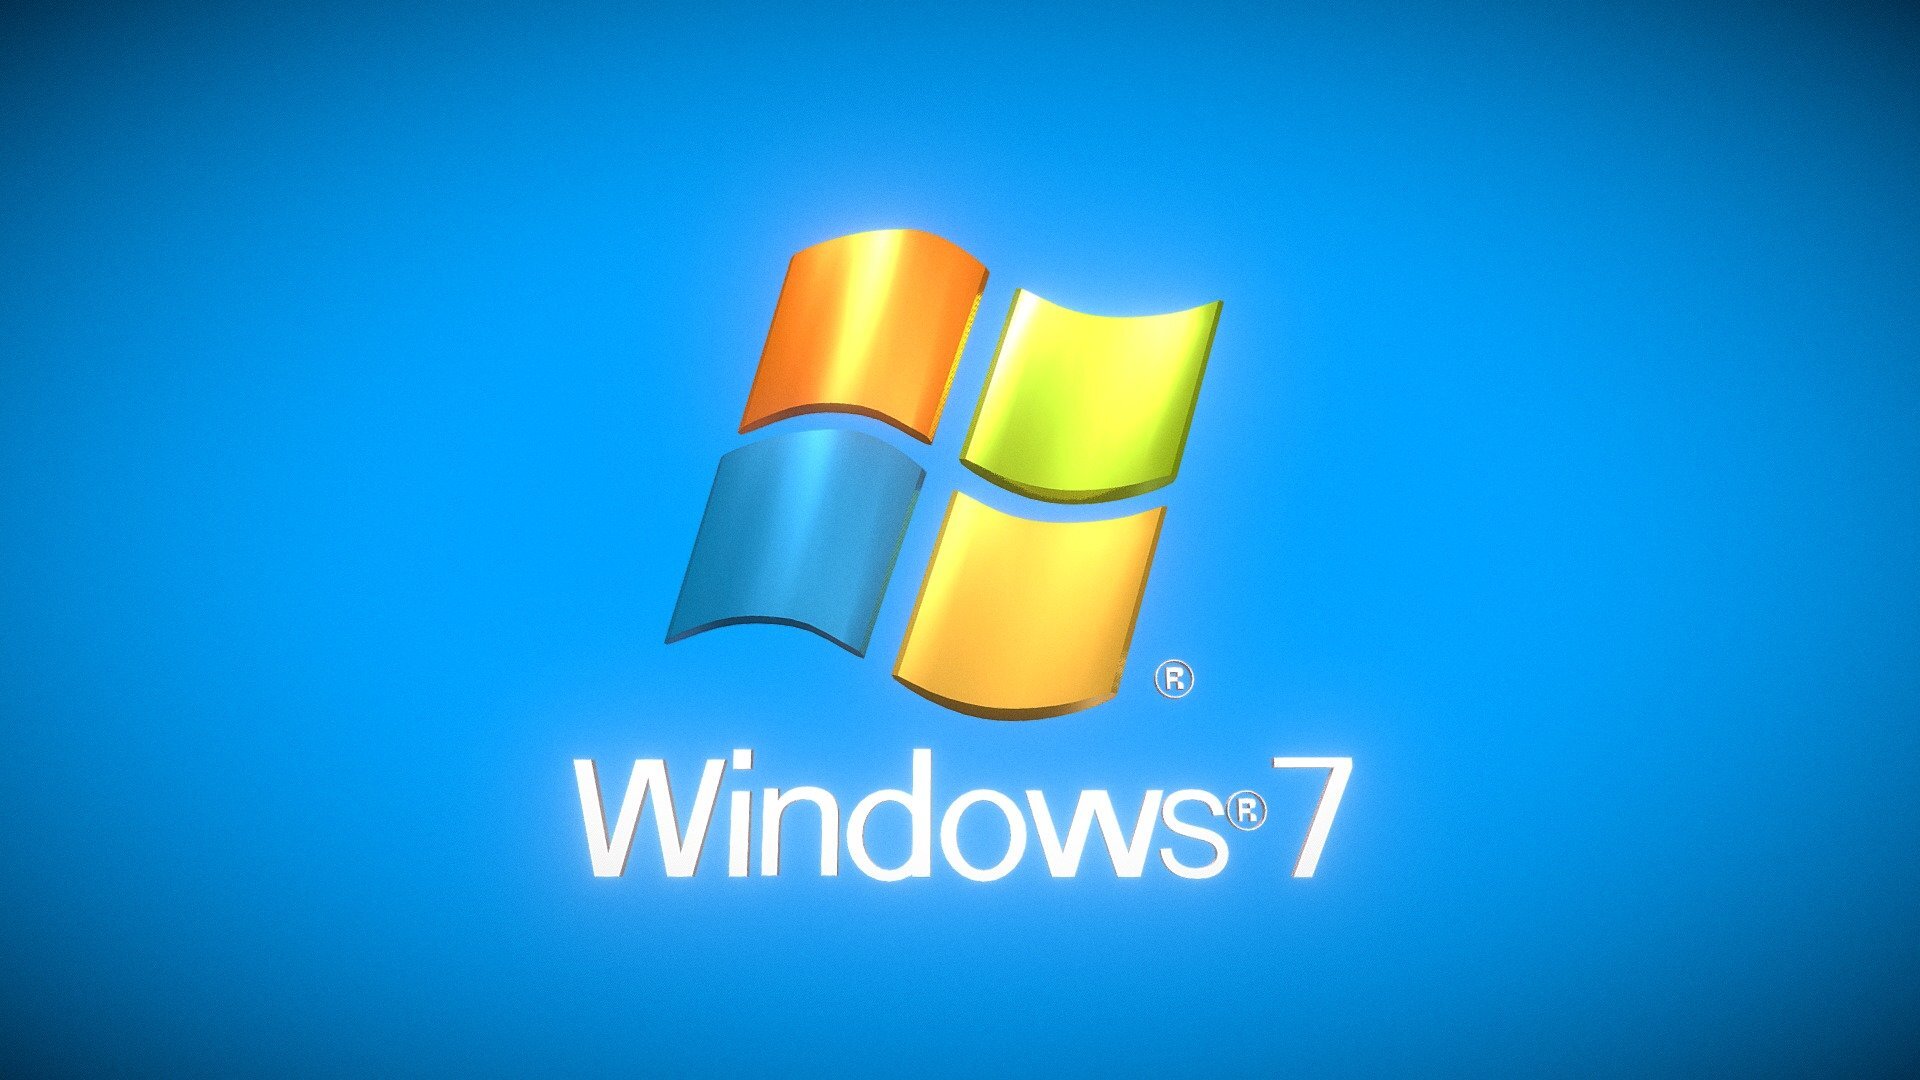  4   Windows 7  Windows 10